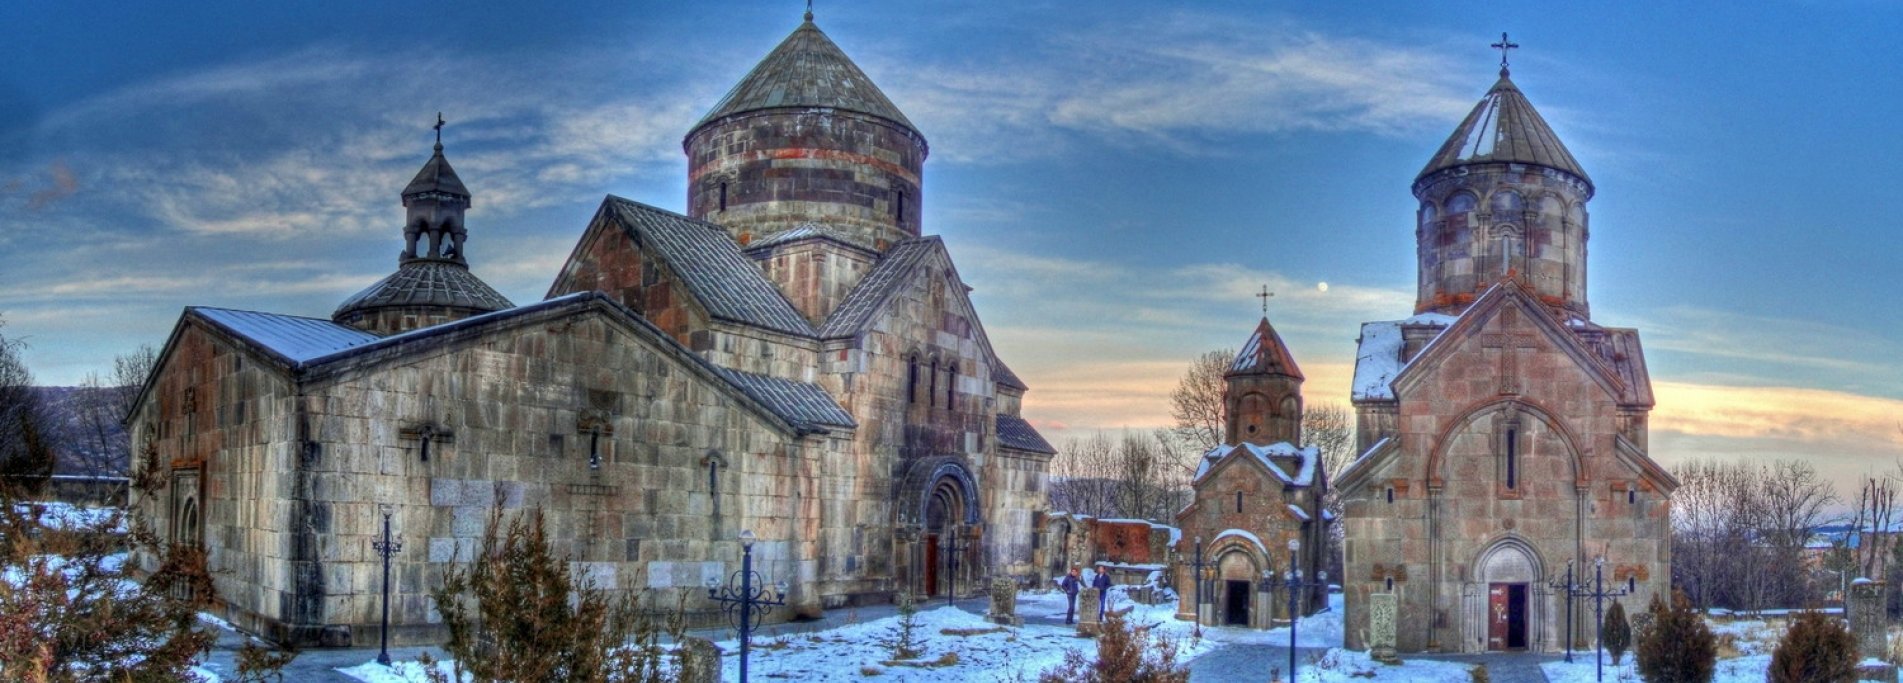 Новый Год в Армении - Горы, солнце и великолепная архитектура